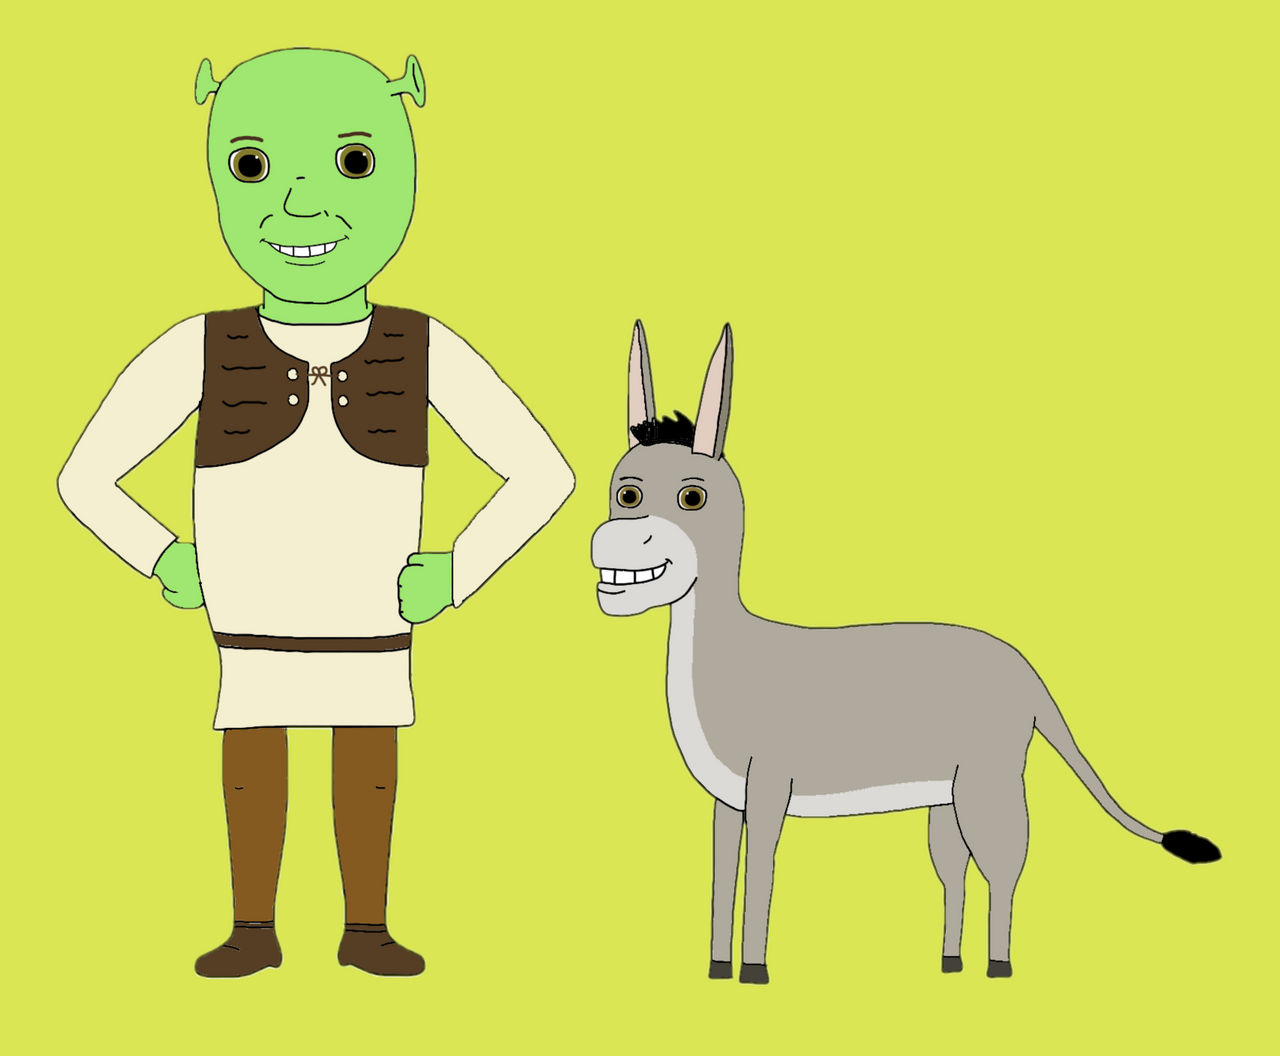 Shrek and Donkey PNG 12 by DarkMoonAnimation on DeviantArt